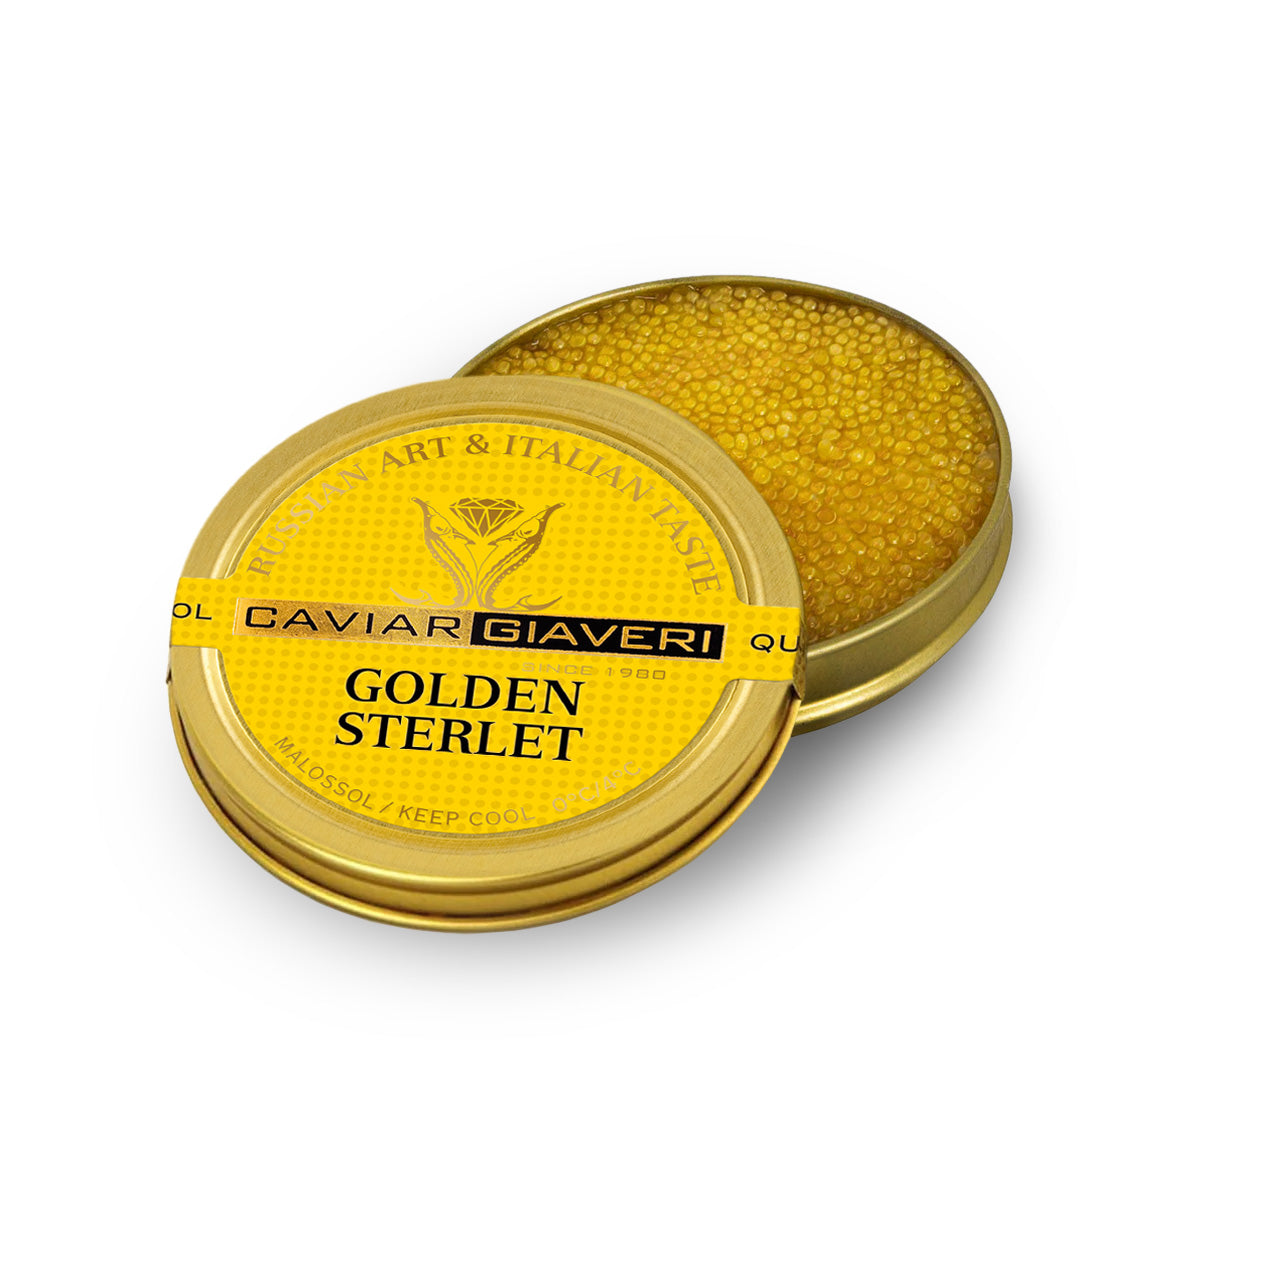 50g Golden Sterlet